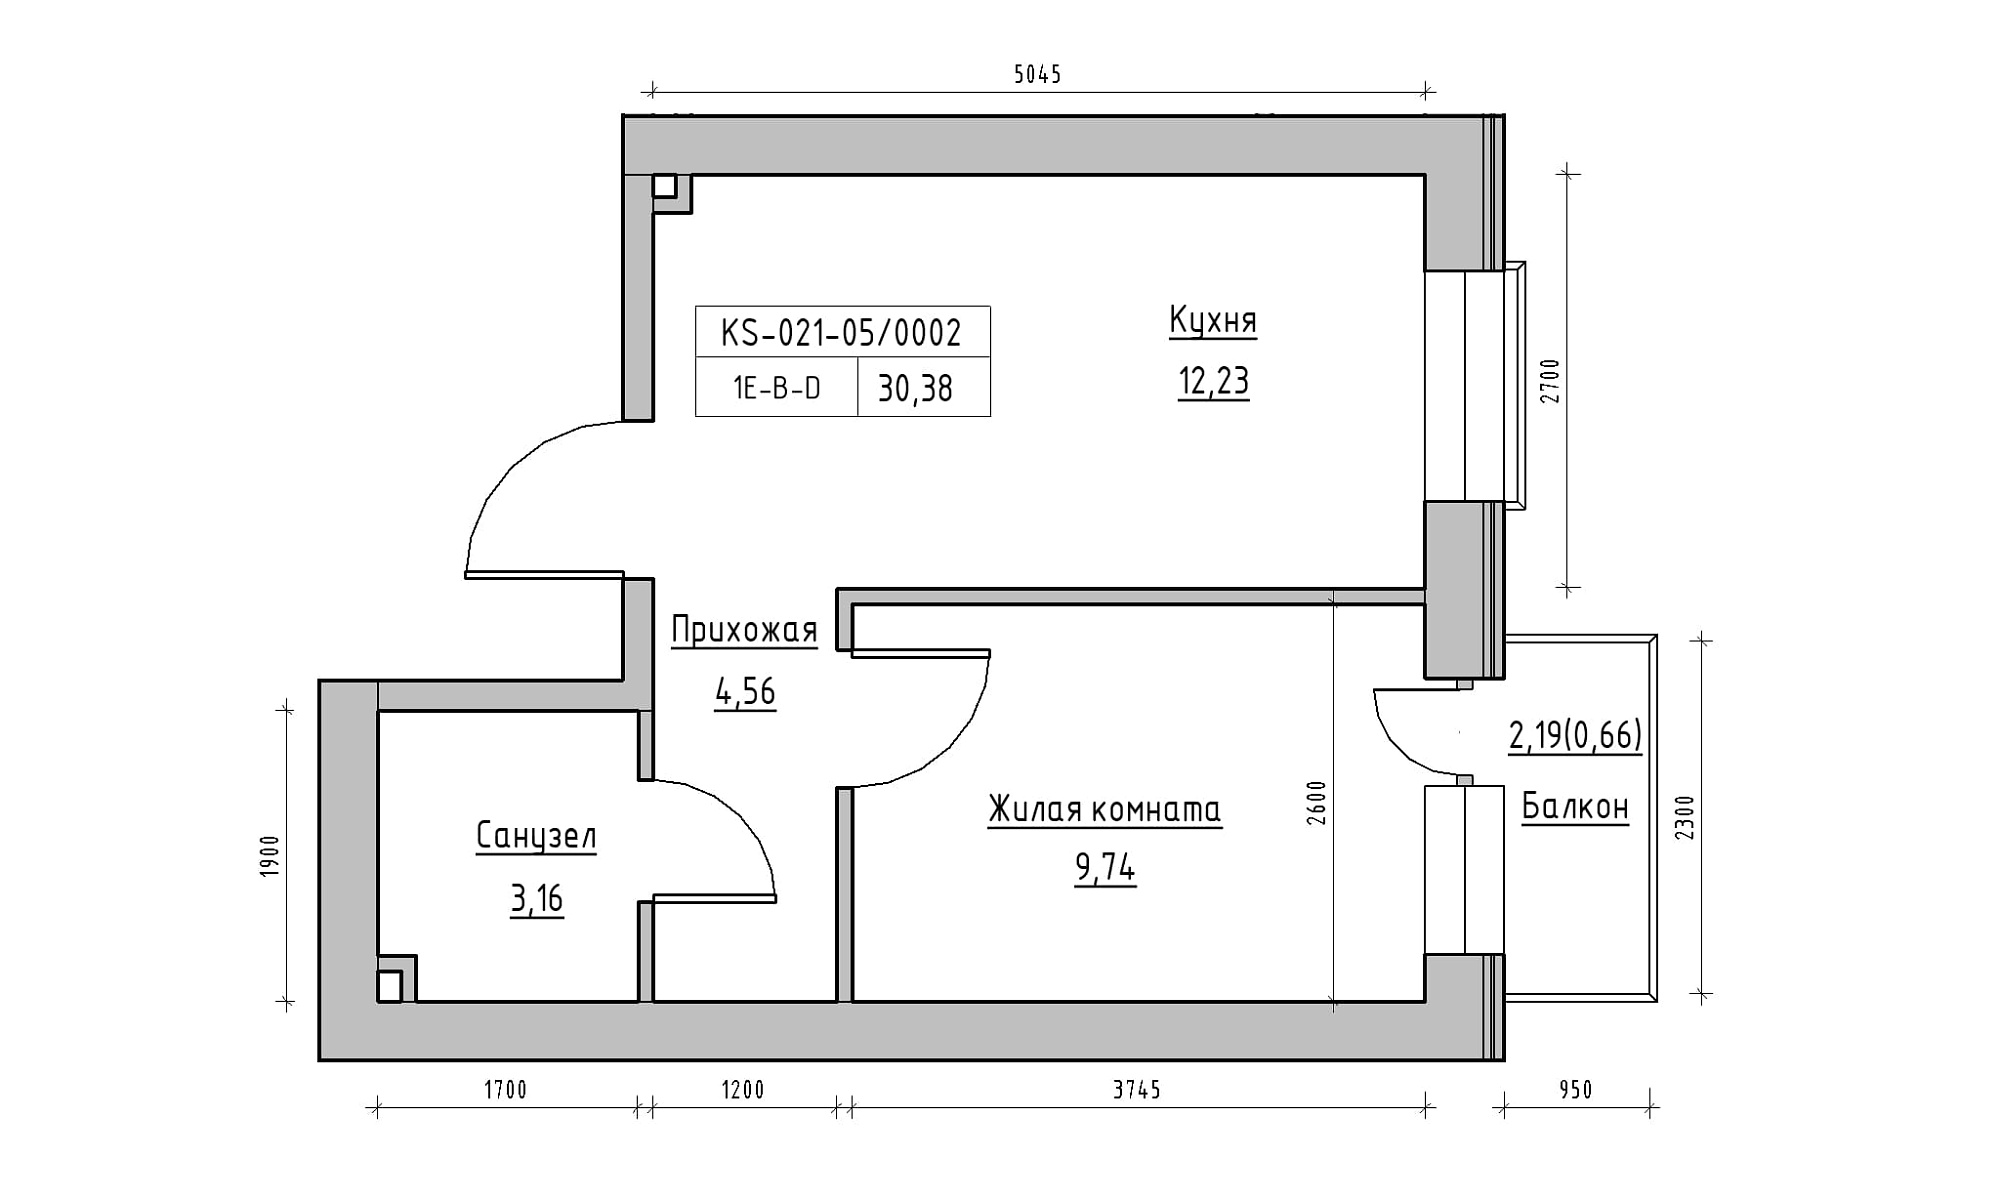 Планировка 1-к квартира площей 30.38м2, KS-021-05/0002.